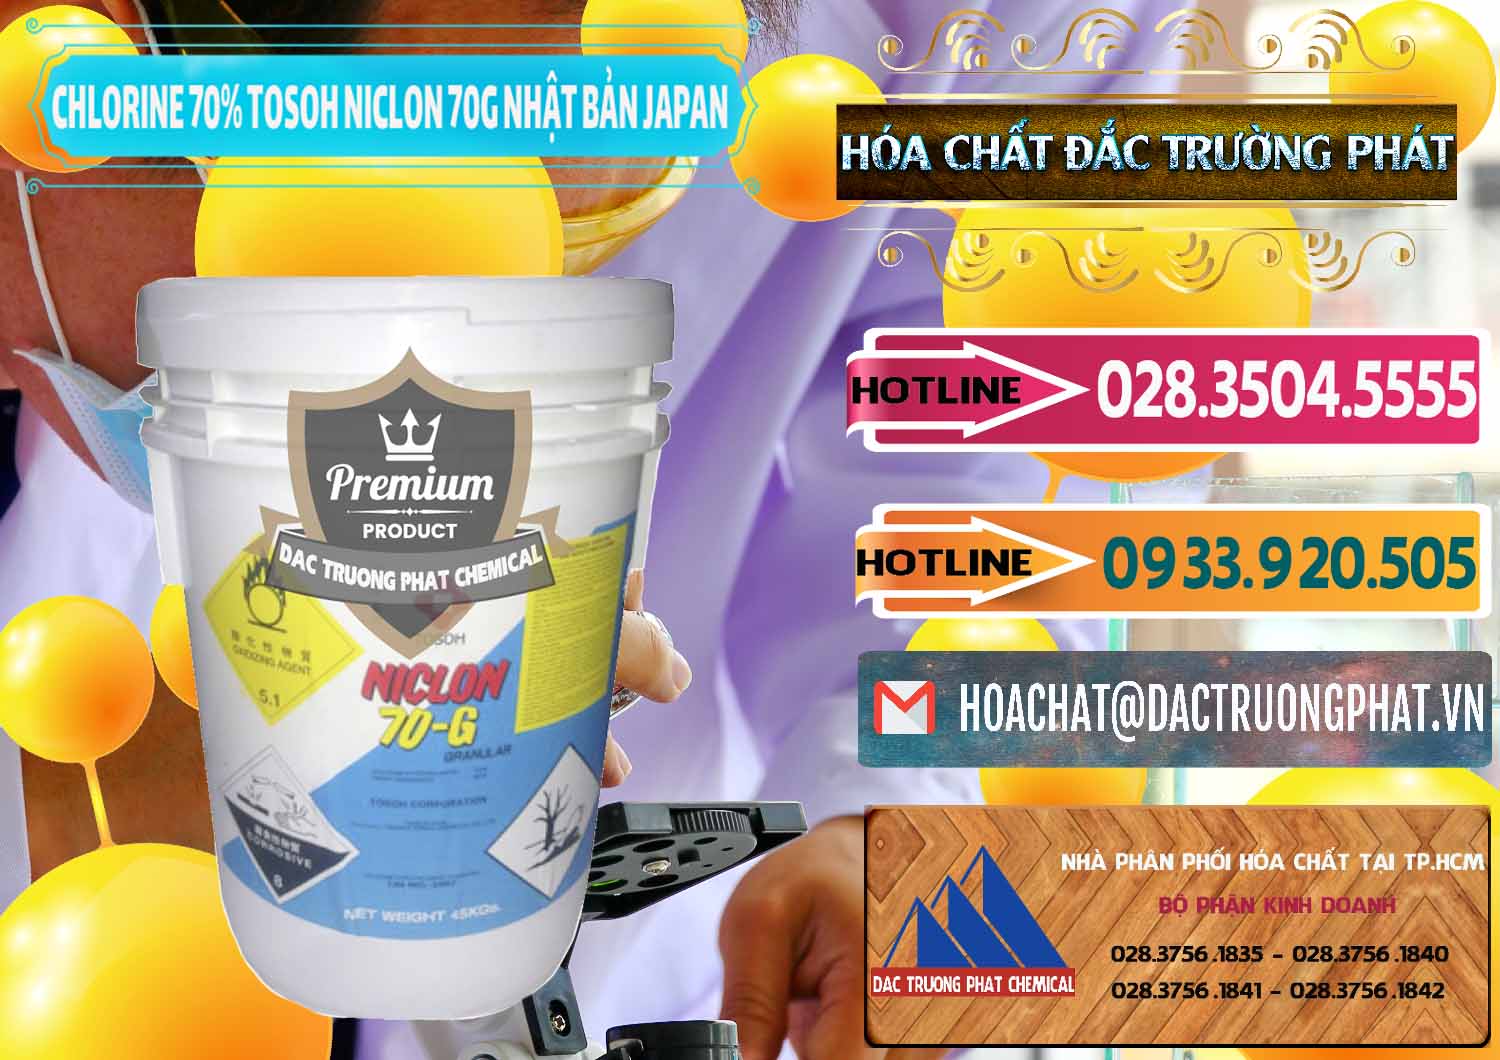 Cty chuyên cung cấp ( bán ) Clorin – Chlorine 70% Tosoh Niclon 70G Nhật Bản Japan - 0242 - Công ty nhập khẩu & cung cấp hóa chất tại TP.HCM - dactruongphat.vn